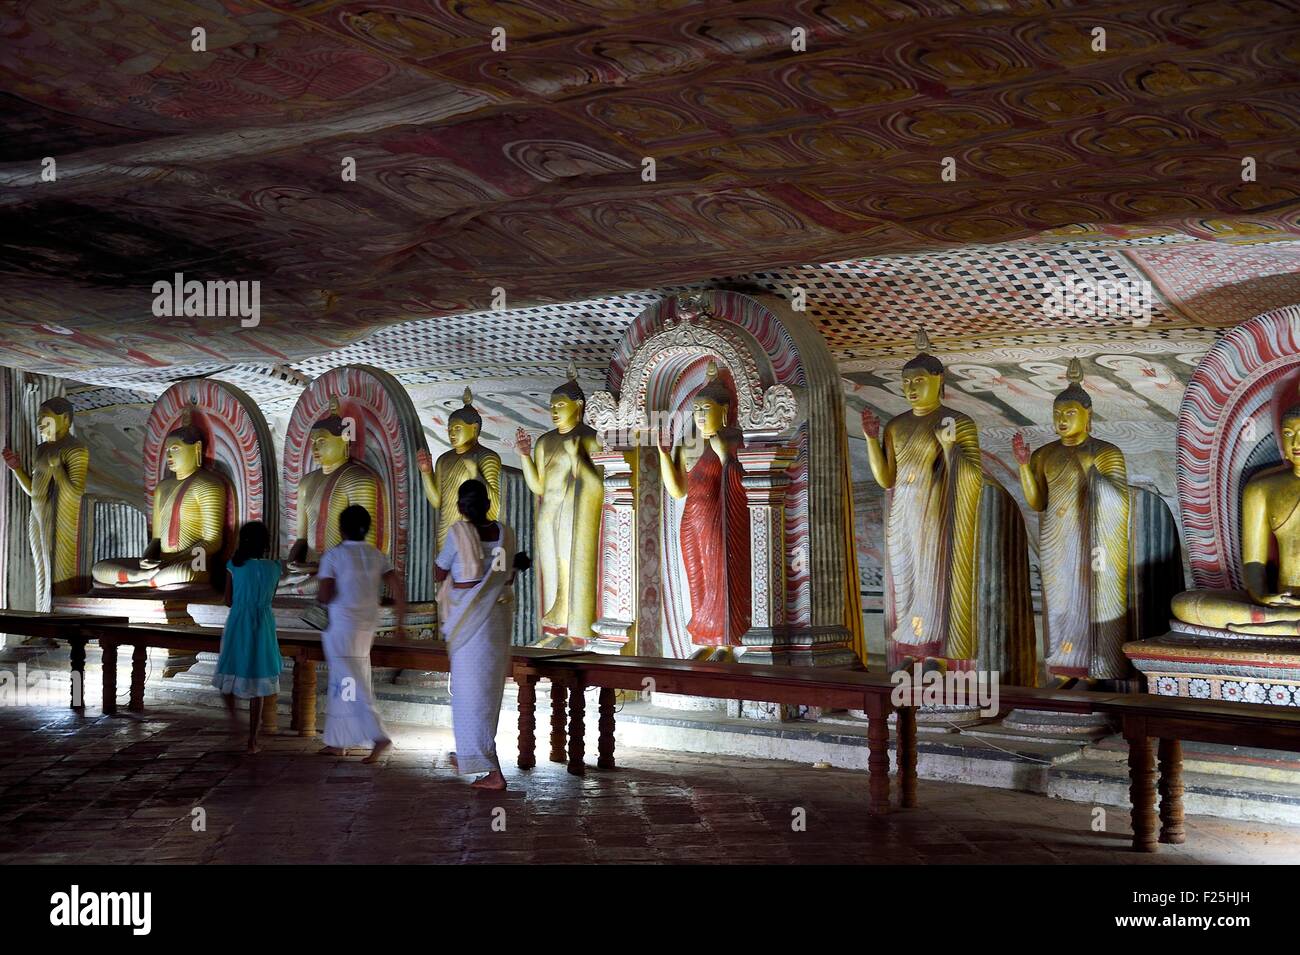 Central Province, Matale-Distrikt, Dambulla, Sri Lanka, Royal Rock Temple auch genannt Ran Giri (Goldener Felsen) von der UNESCO als Welterbe gelistet, Höhle 2 Maharaja Viharaya ist die größte Stockfoto